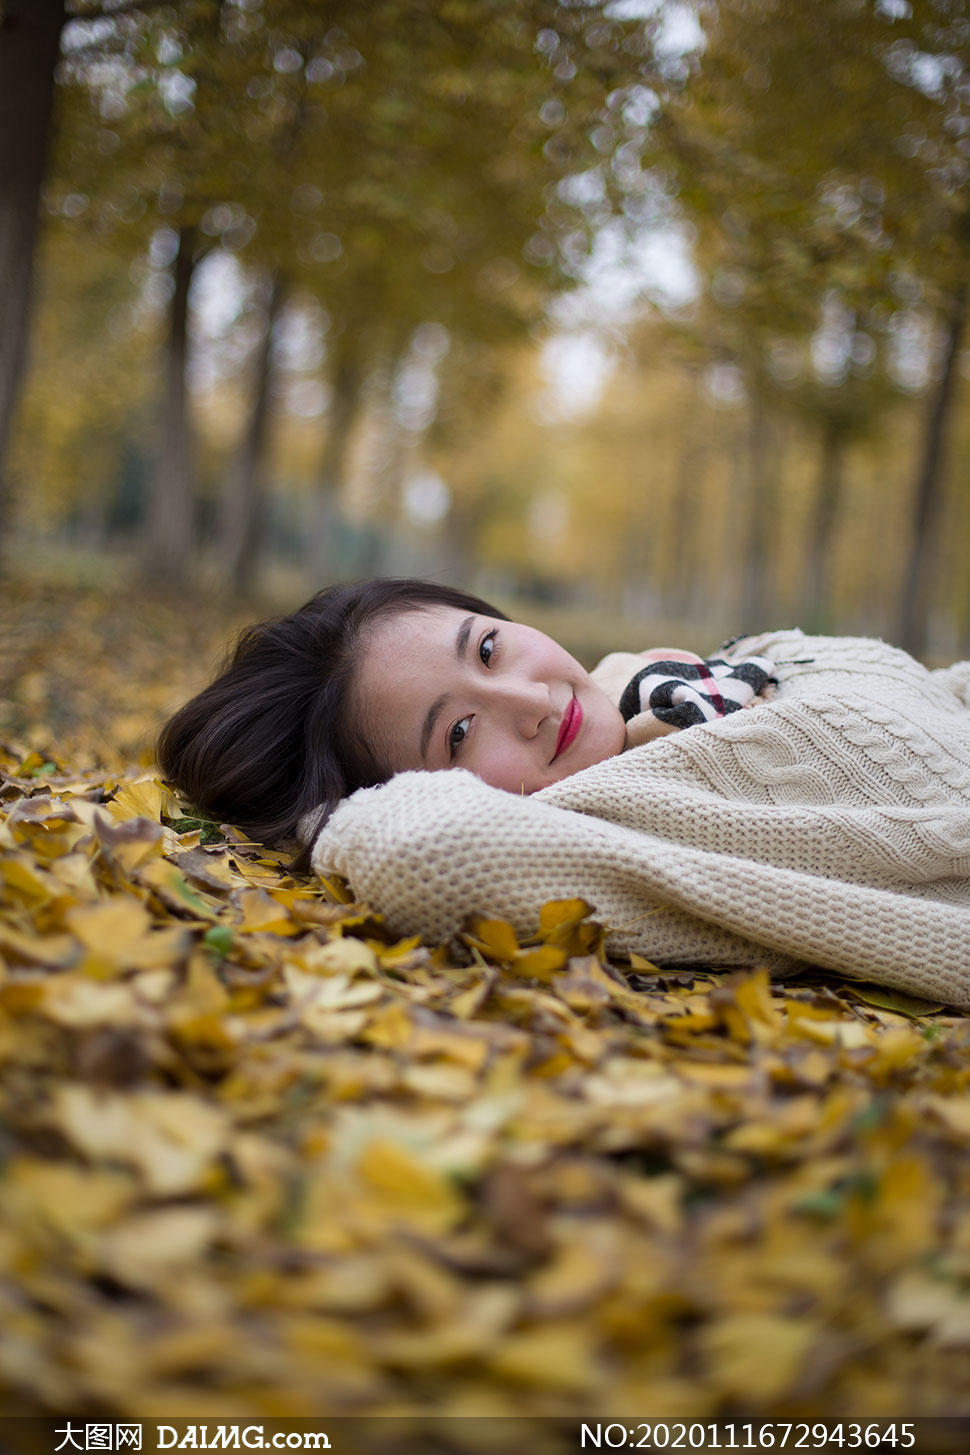 躺在落叶上的秋装美女摄影高清原片